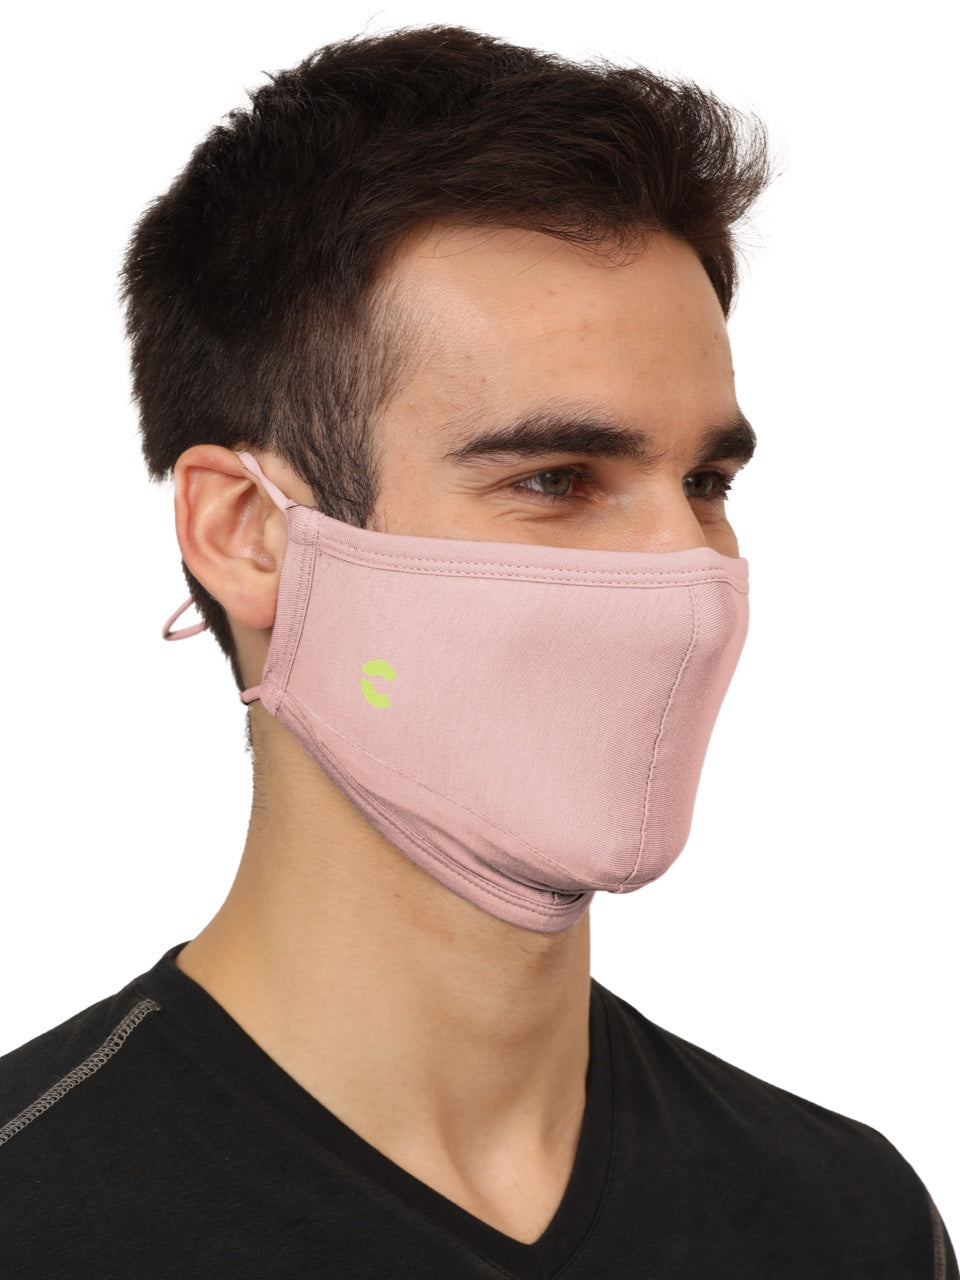 BreathePro Head Bound Mask (Fashion) - Pack of 5